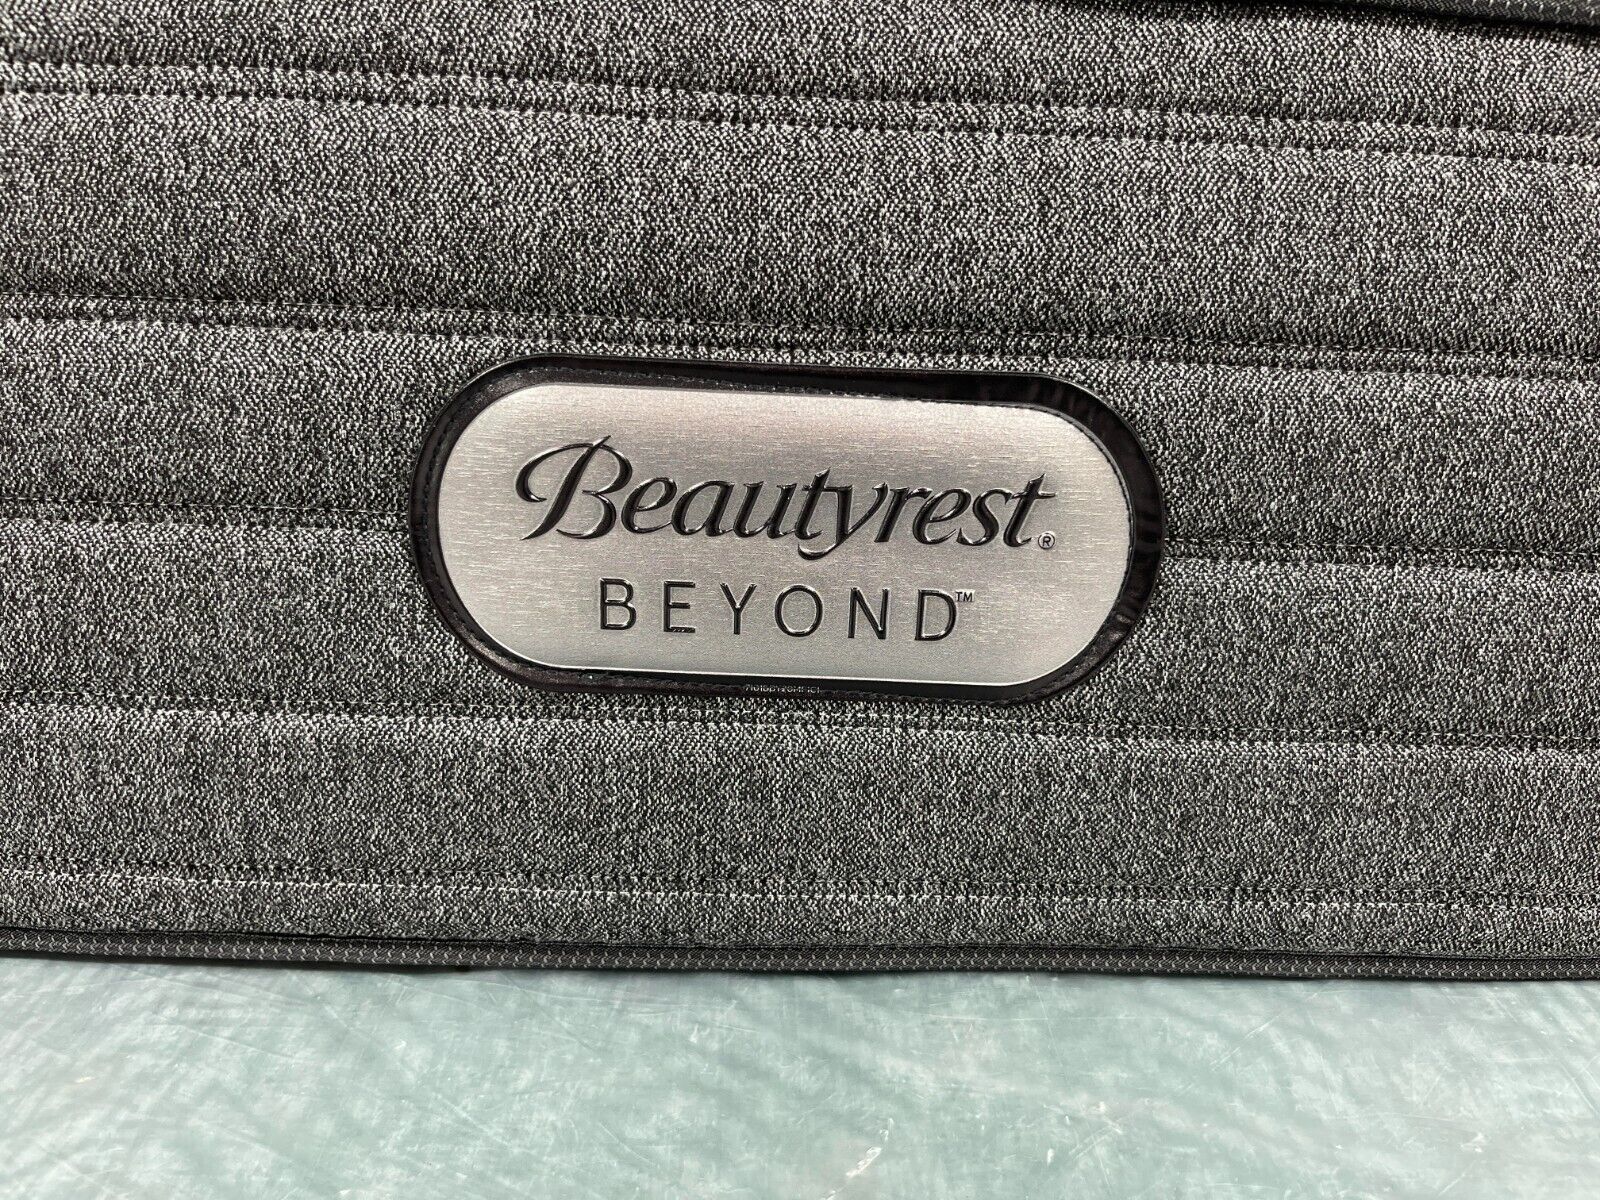 beautyrest beyond firm mattress review